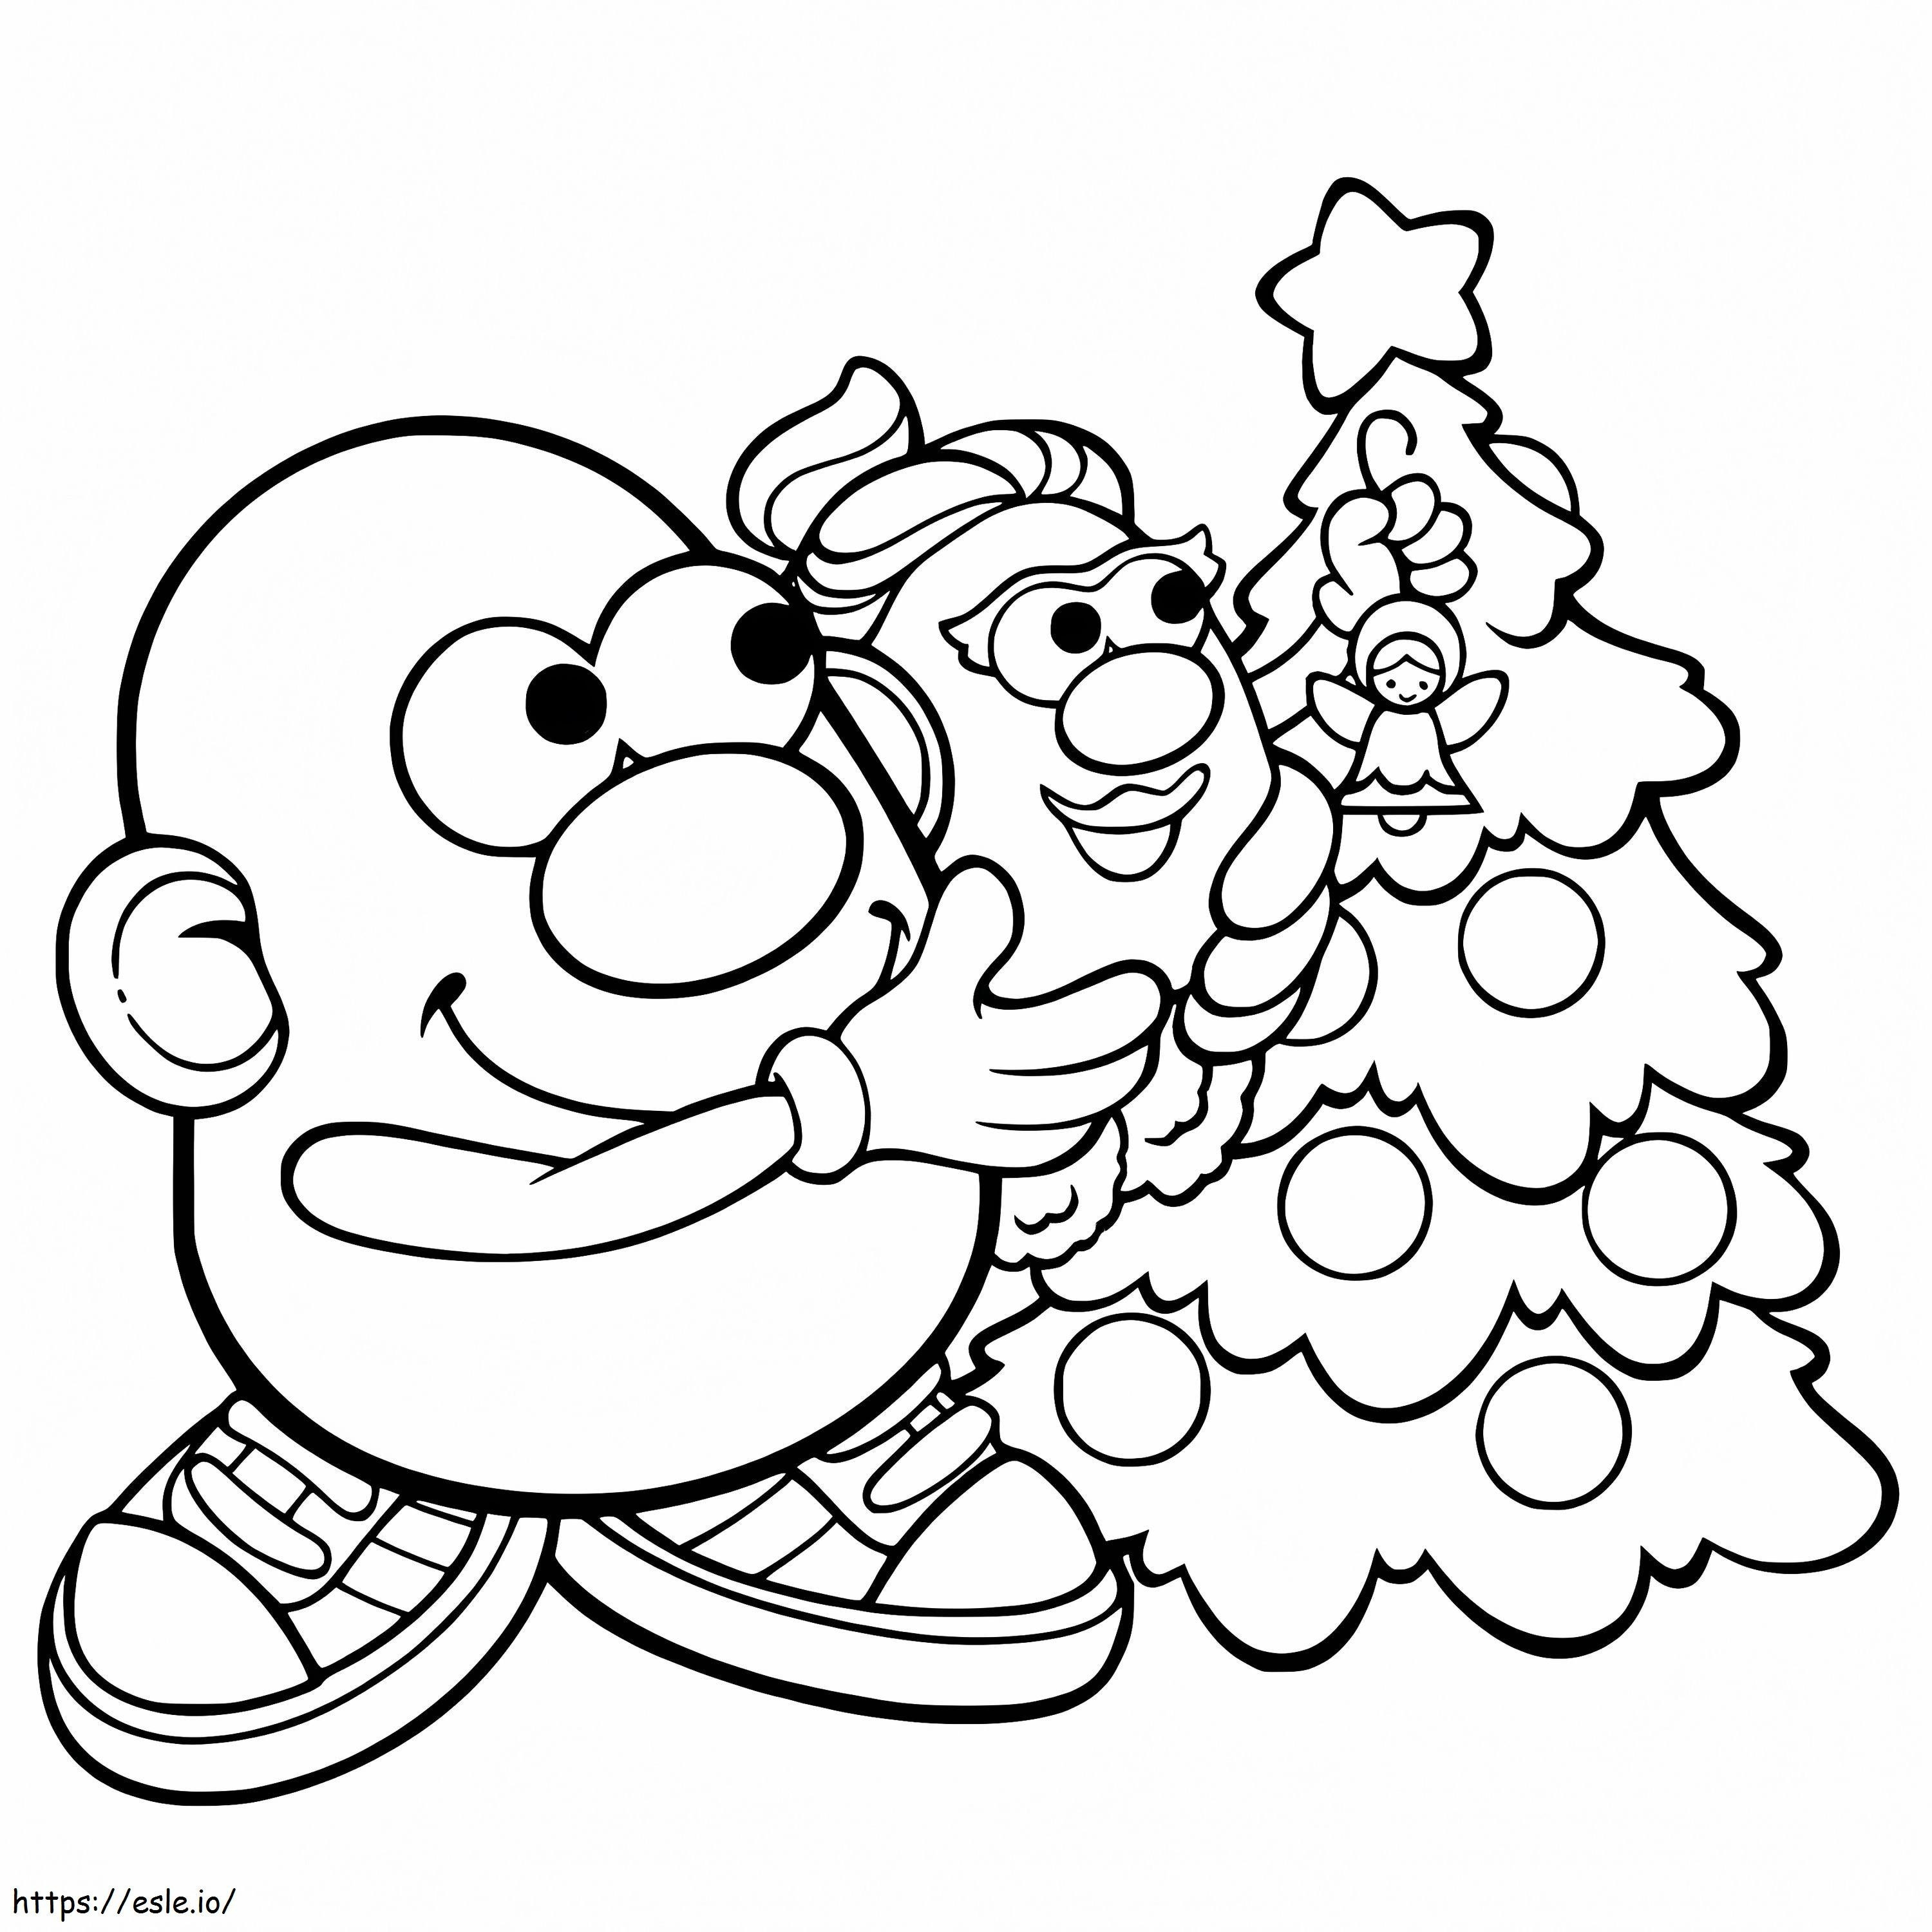 Meneer Potato Head met Kerstmis kleurplaat kleurplaat